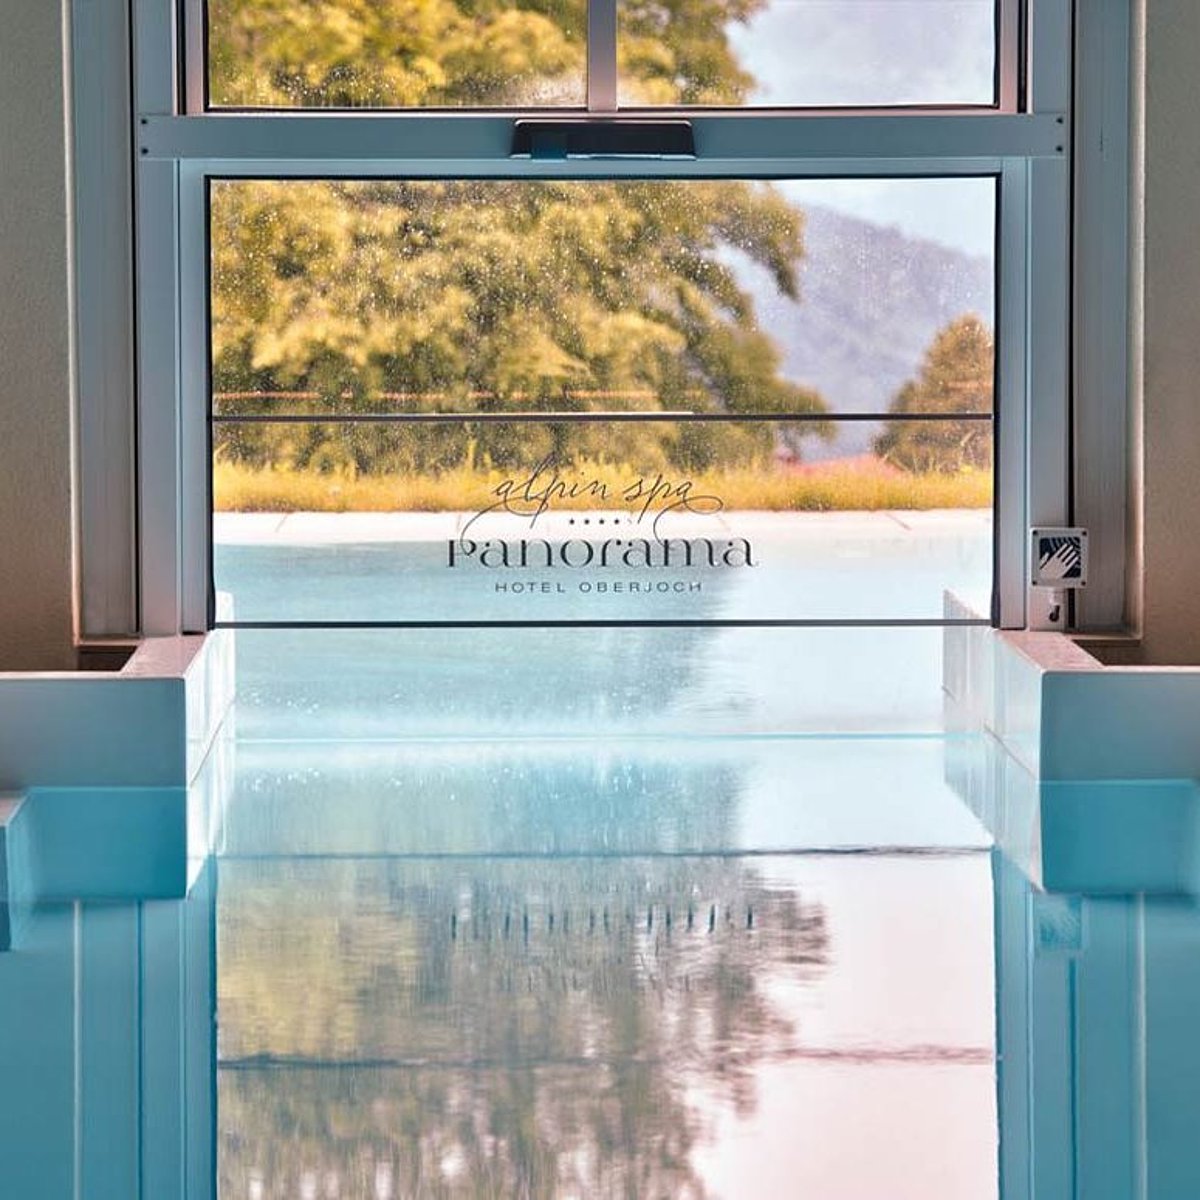 Ein Pool mit einem elektrischen Hochschiebefenster als Schleuse.